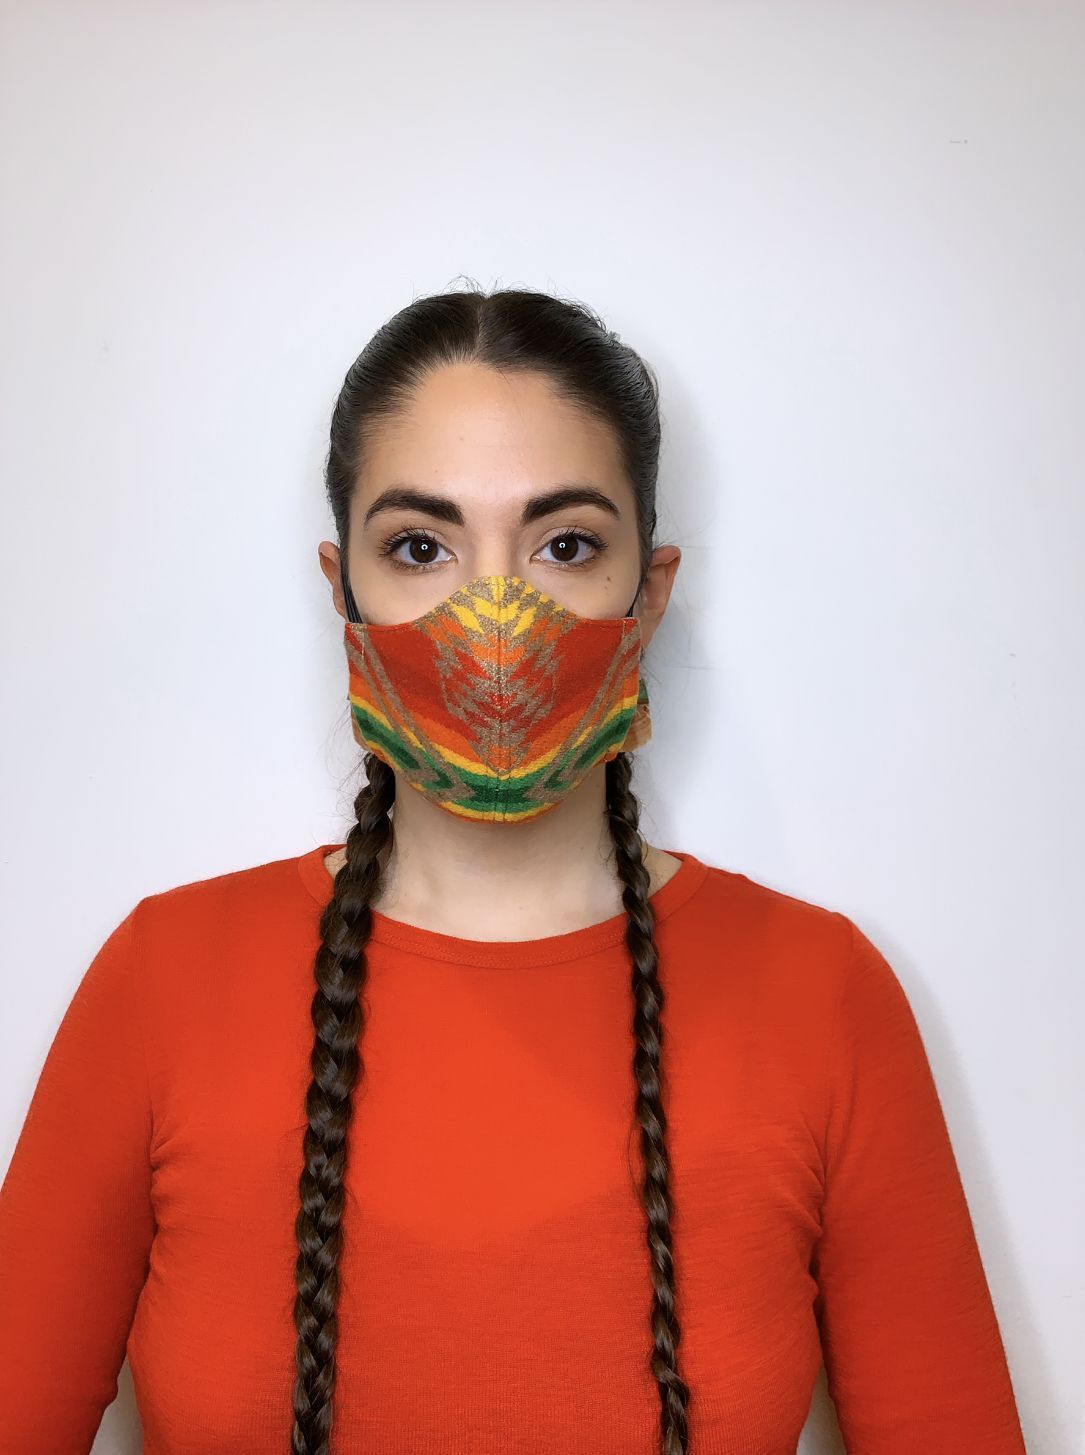 Lo stilista indigeno che usa le maschere per combattere l'ingiustizia